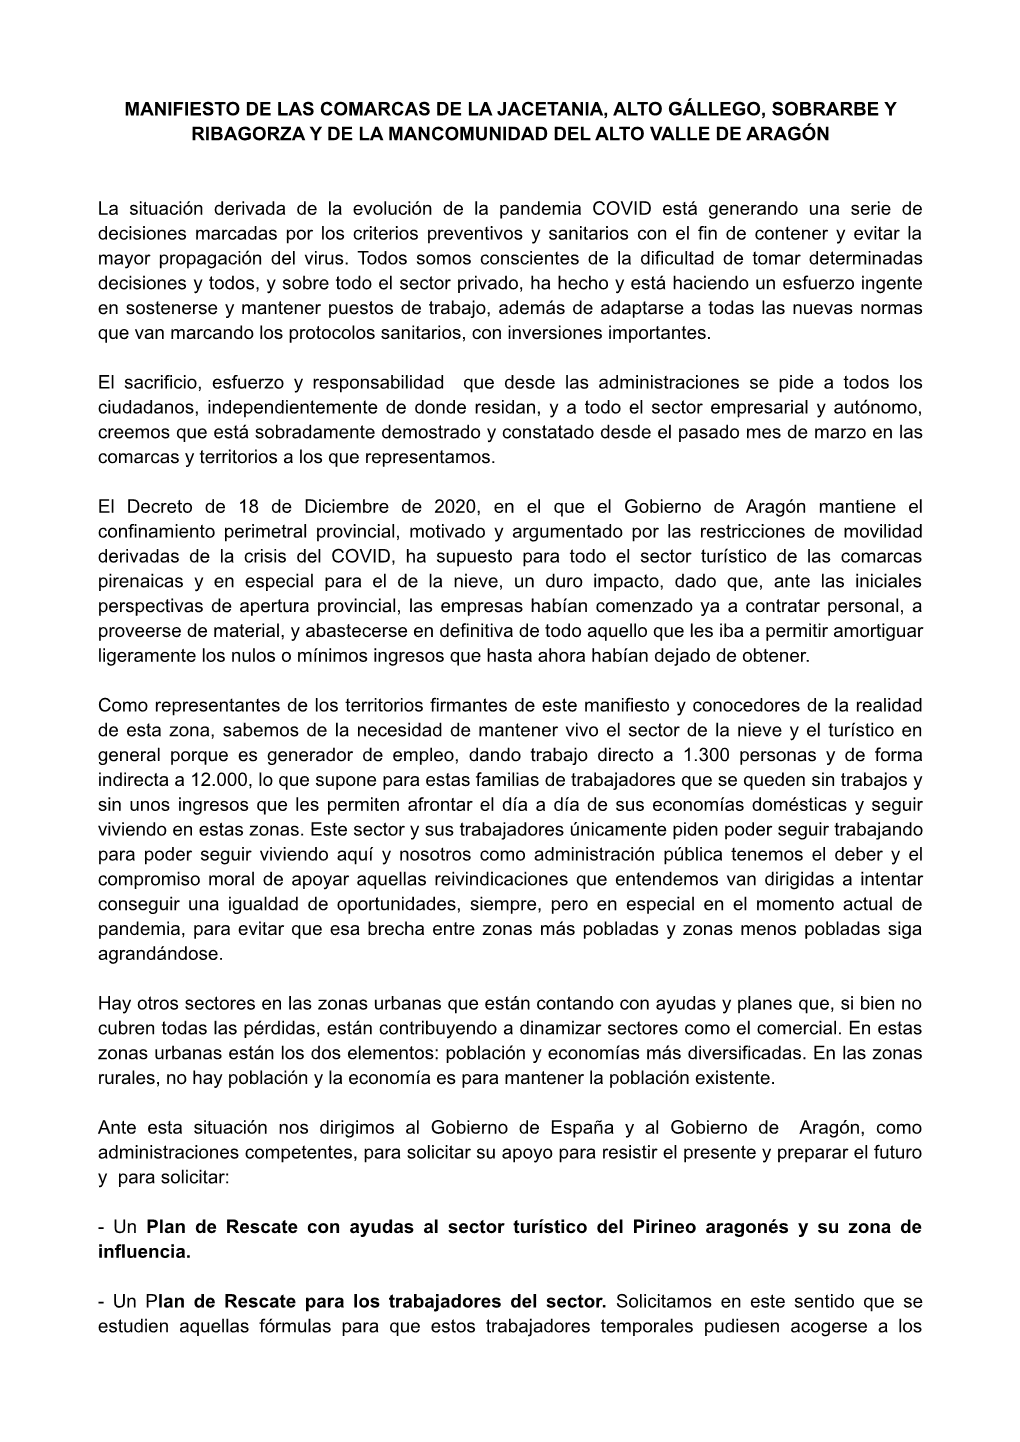 Manifiesto De Las Comarcas De La Jacetania, Alto Gállego, Sobrarbe Y Ribagorza Y De La Mancomunidad Del Alto Valle De Aragón